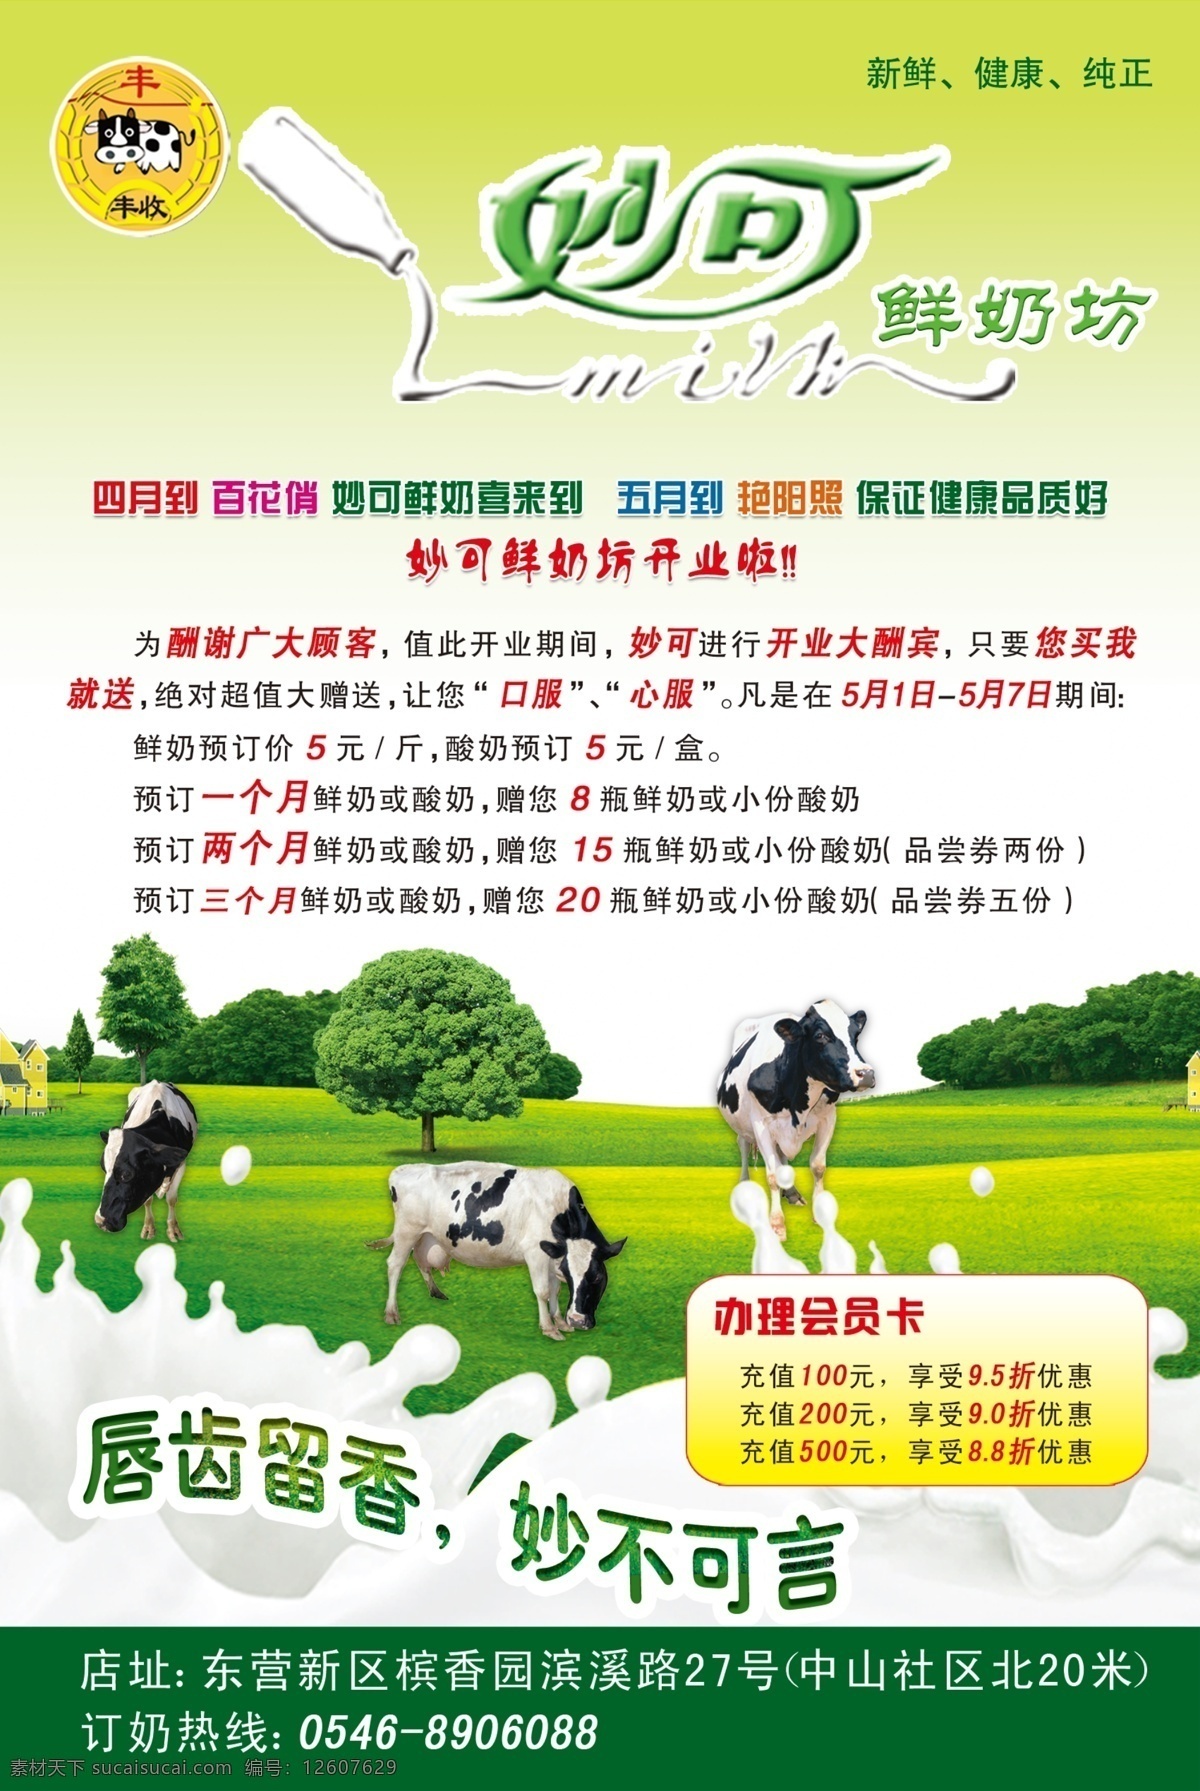 牛奶宣传单 妙可 妙可标志 奶牛 草地 牛奶图 草原 绿地 树 dm宣传单 广告设计模板 源文件